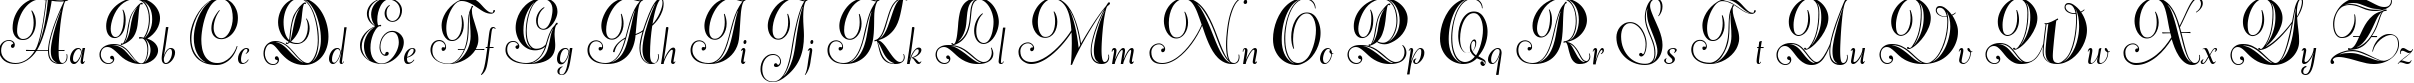 Пример написания английского алфавита шрифтом Adana script